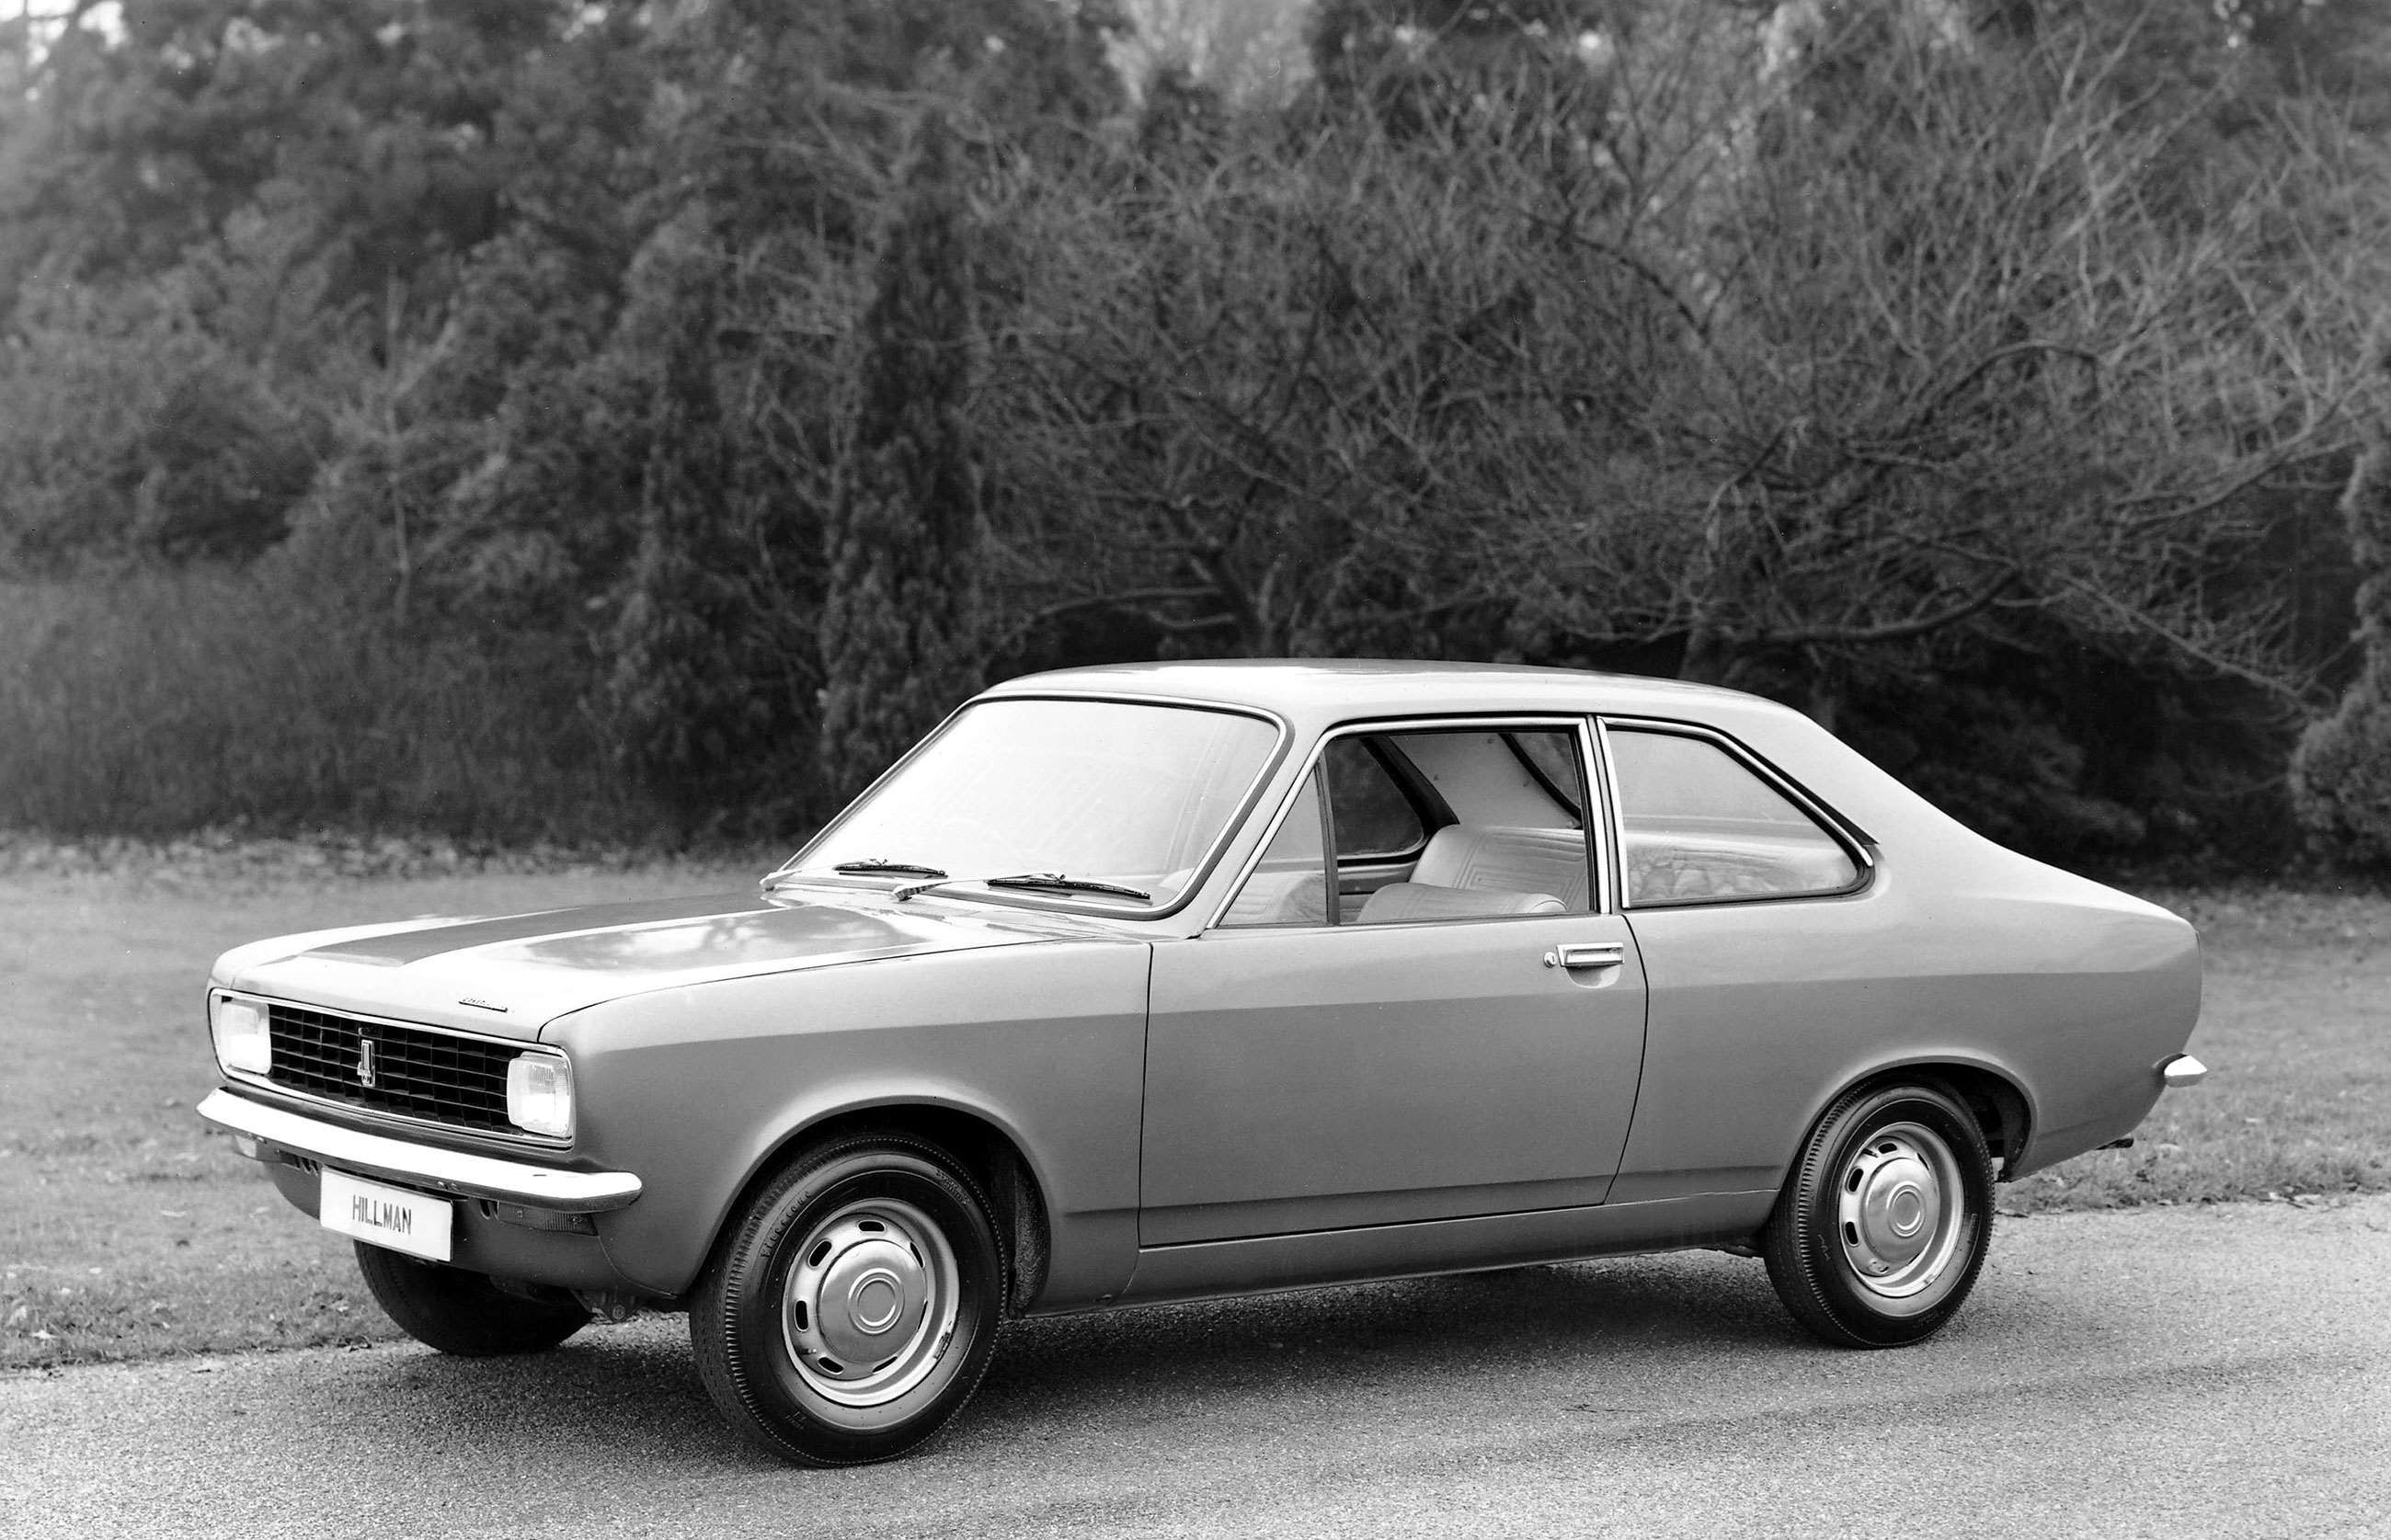 cars-from-1970-8-hillman-avenger-goodwood-10012020.jpg